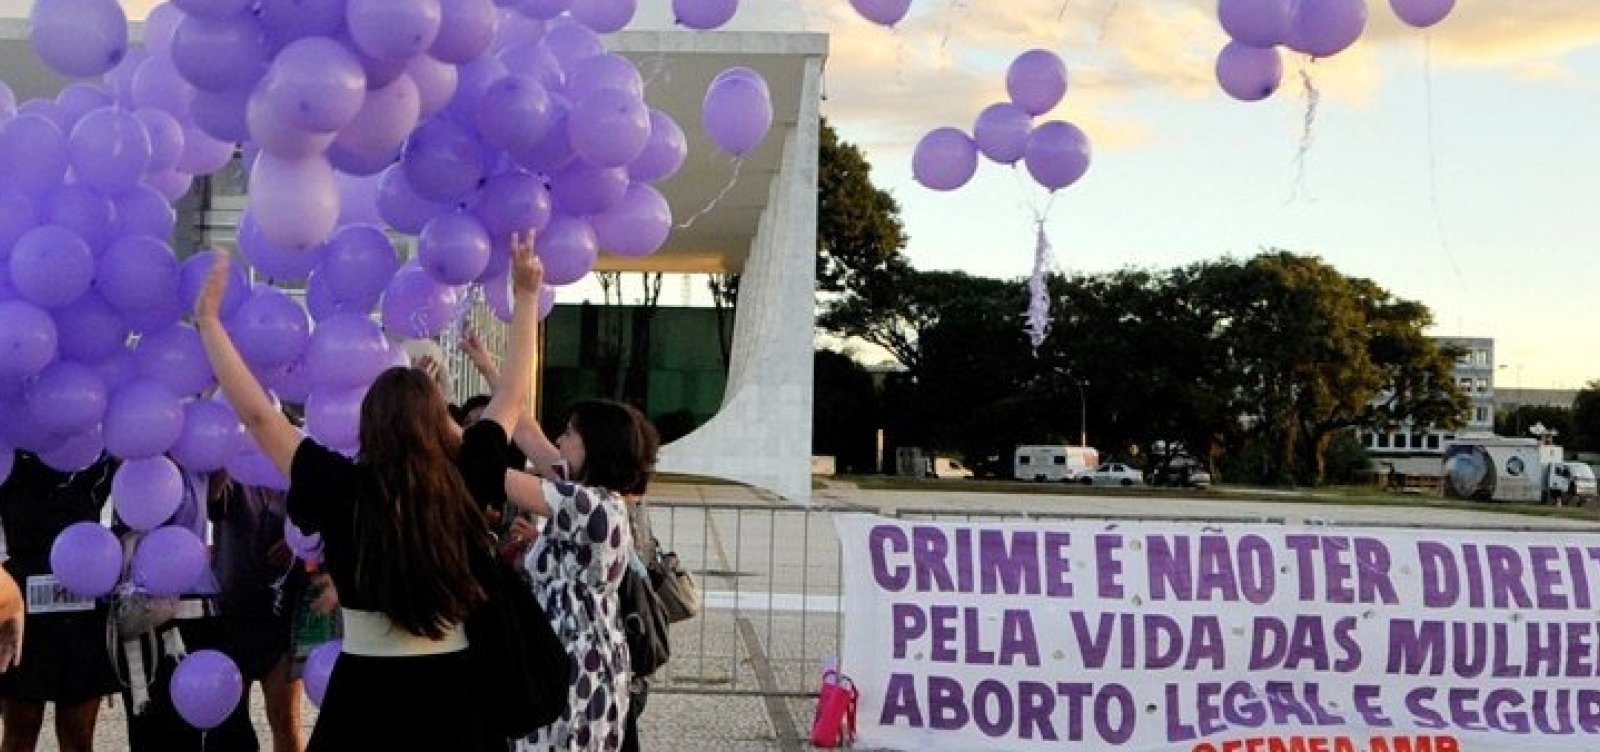 CCJ do Senado vota proposta que proíbe aborto em caso de feto anencéfalo